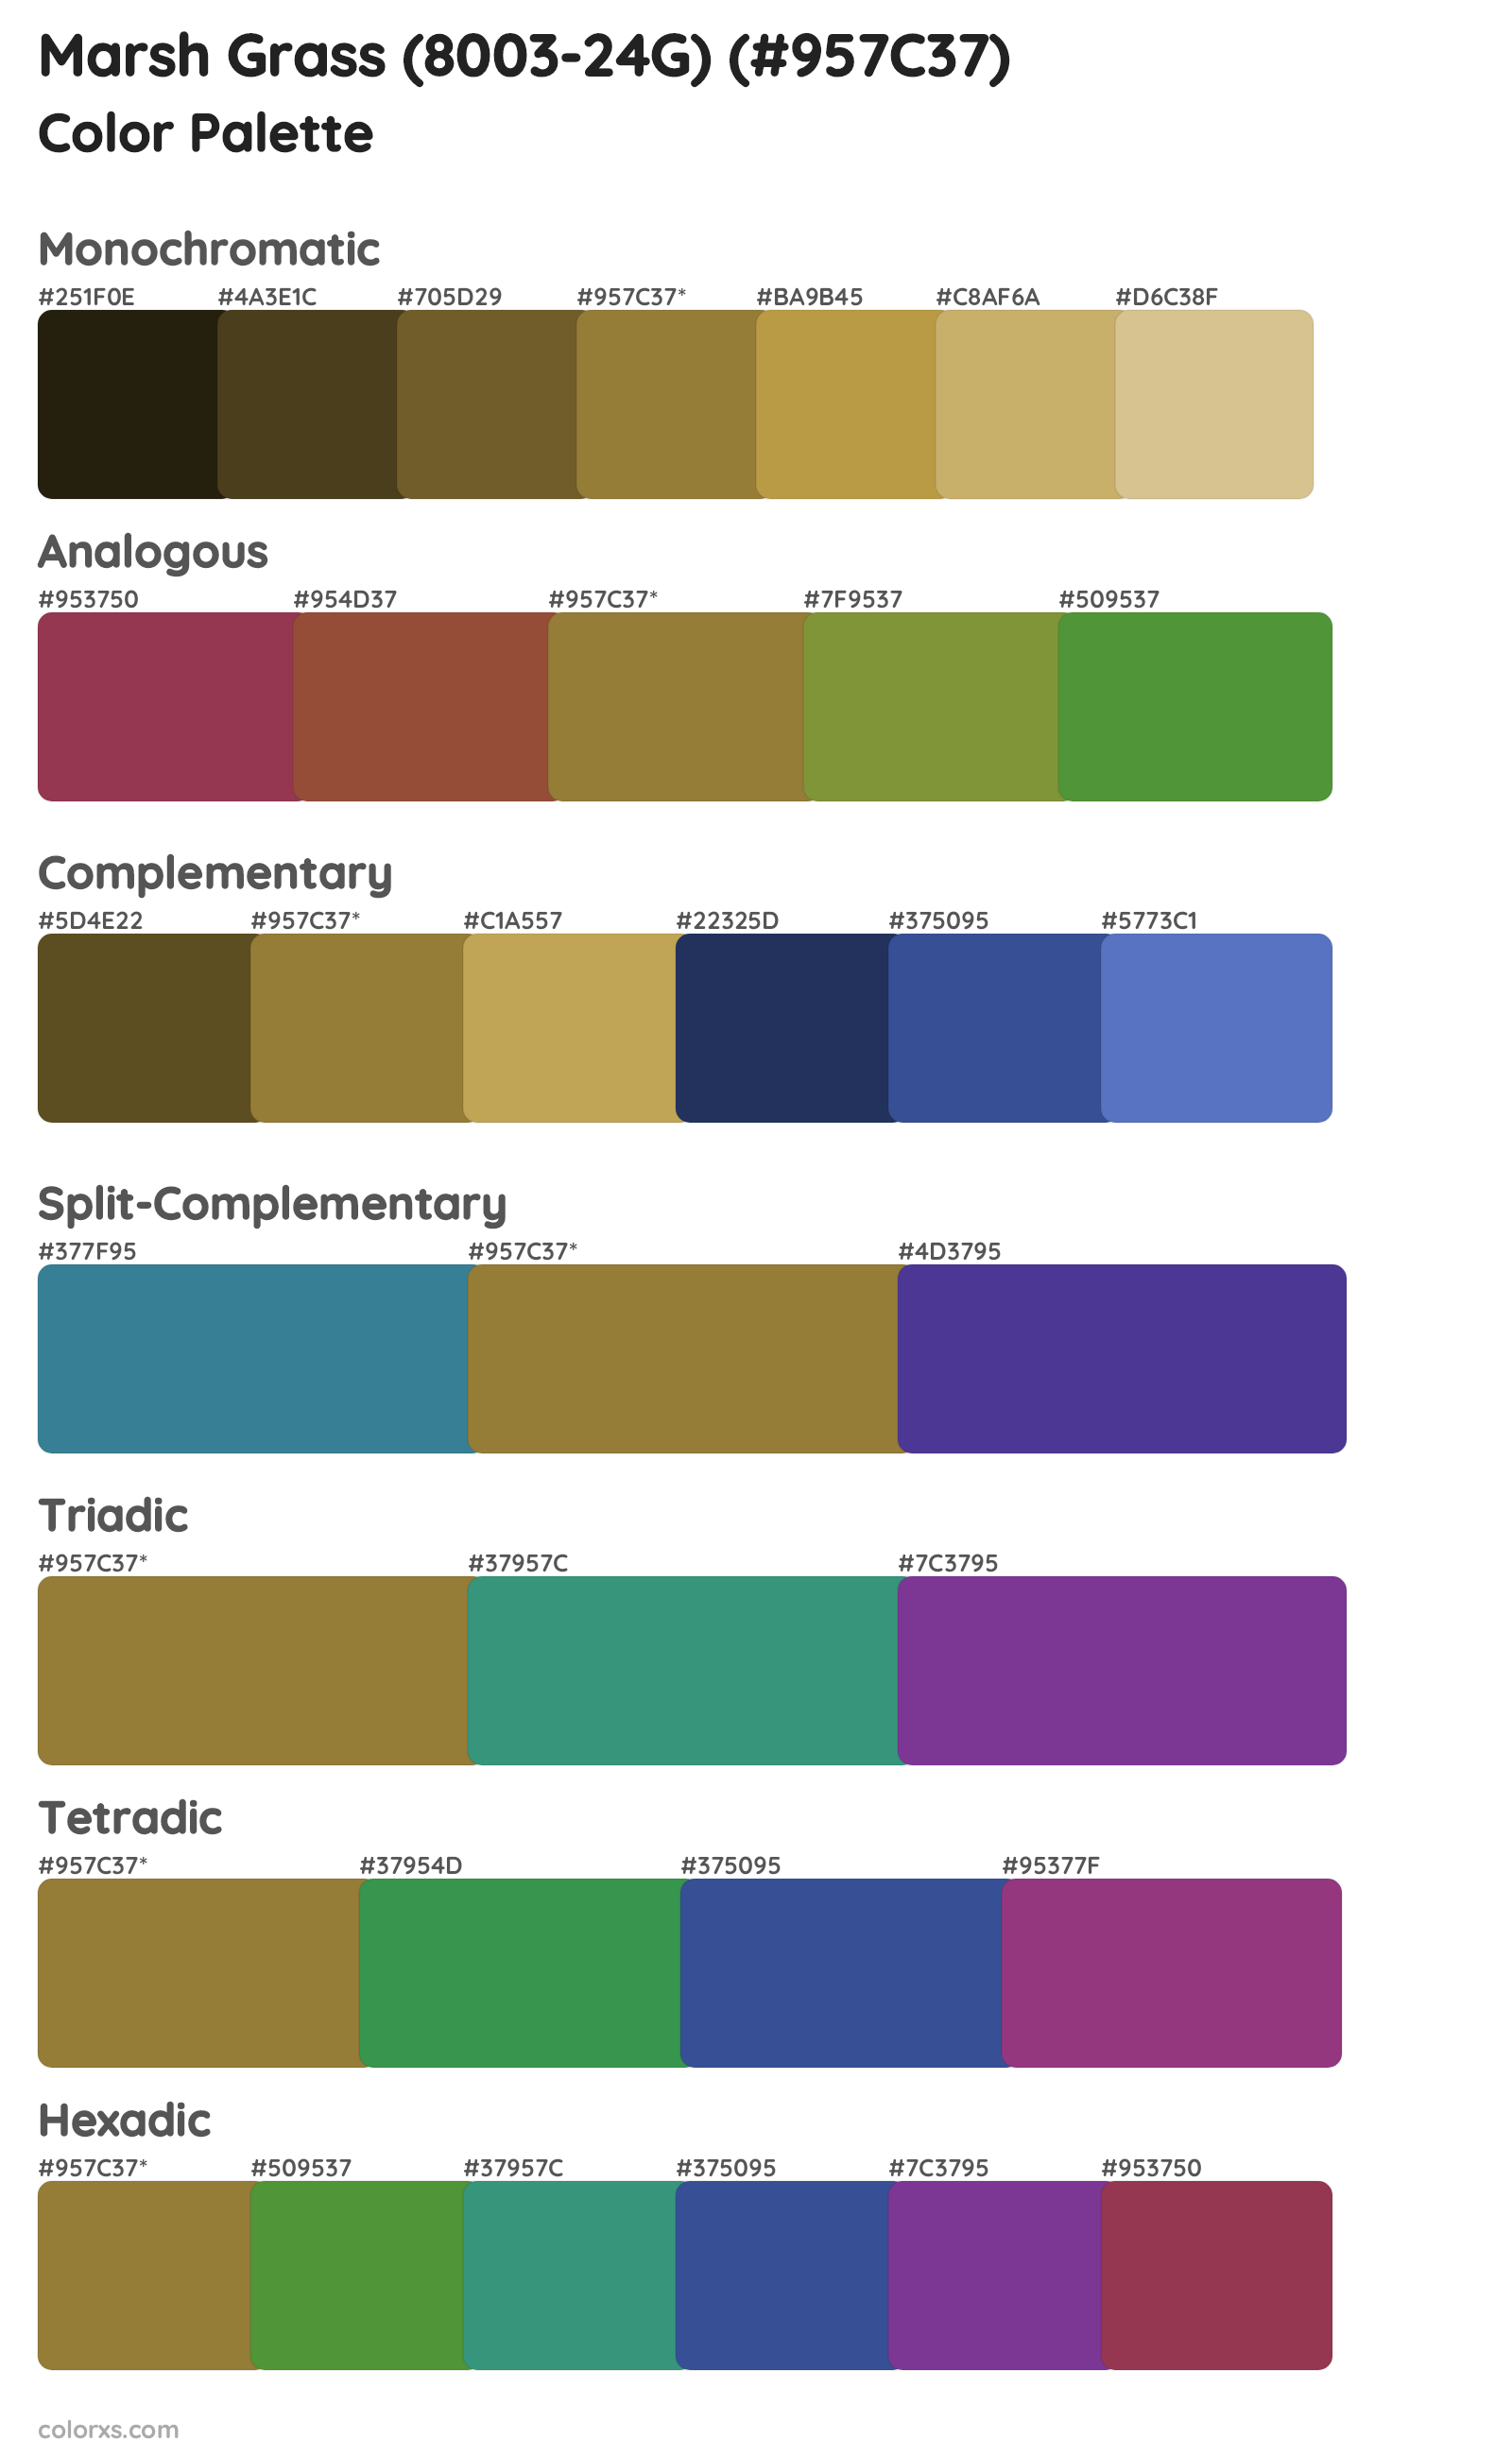 Marsh Grass (8003-24G) Color Scheme Palettes